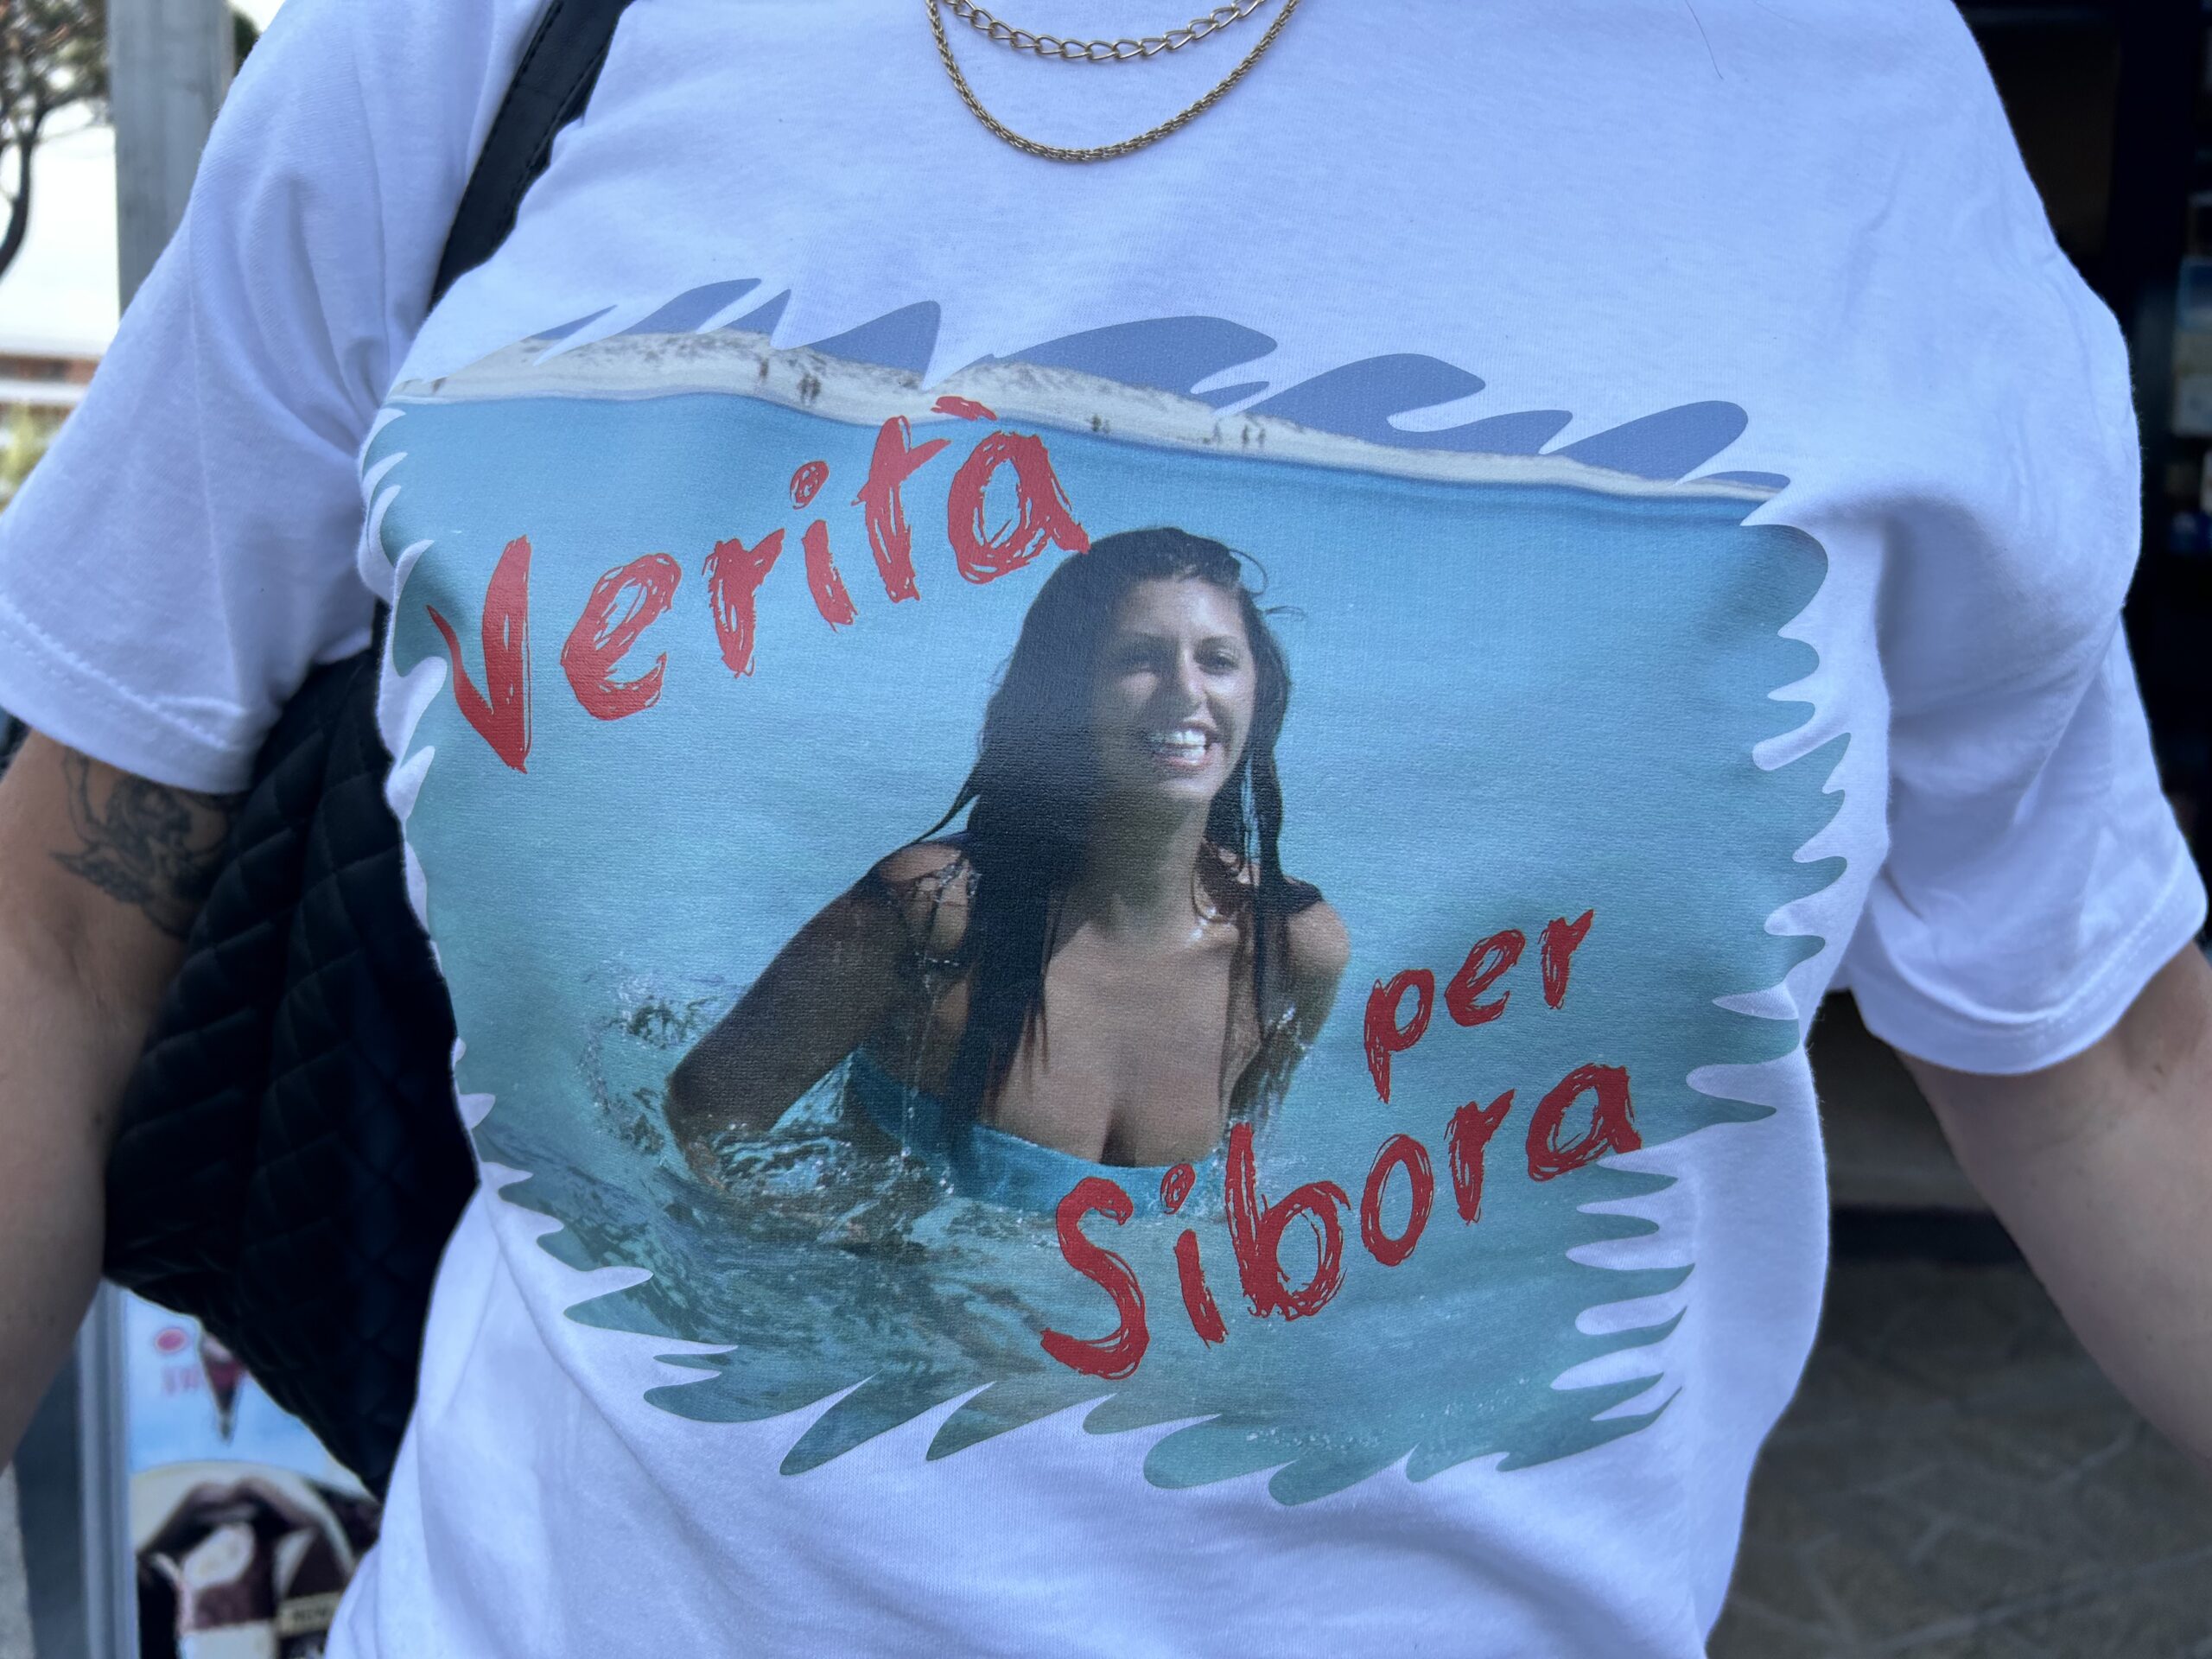 Sibora desaparecida en Torremolinos, Alerta Desaparecidos representa a la familia